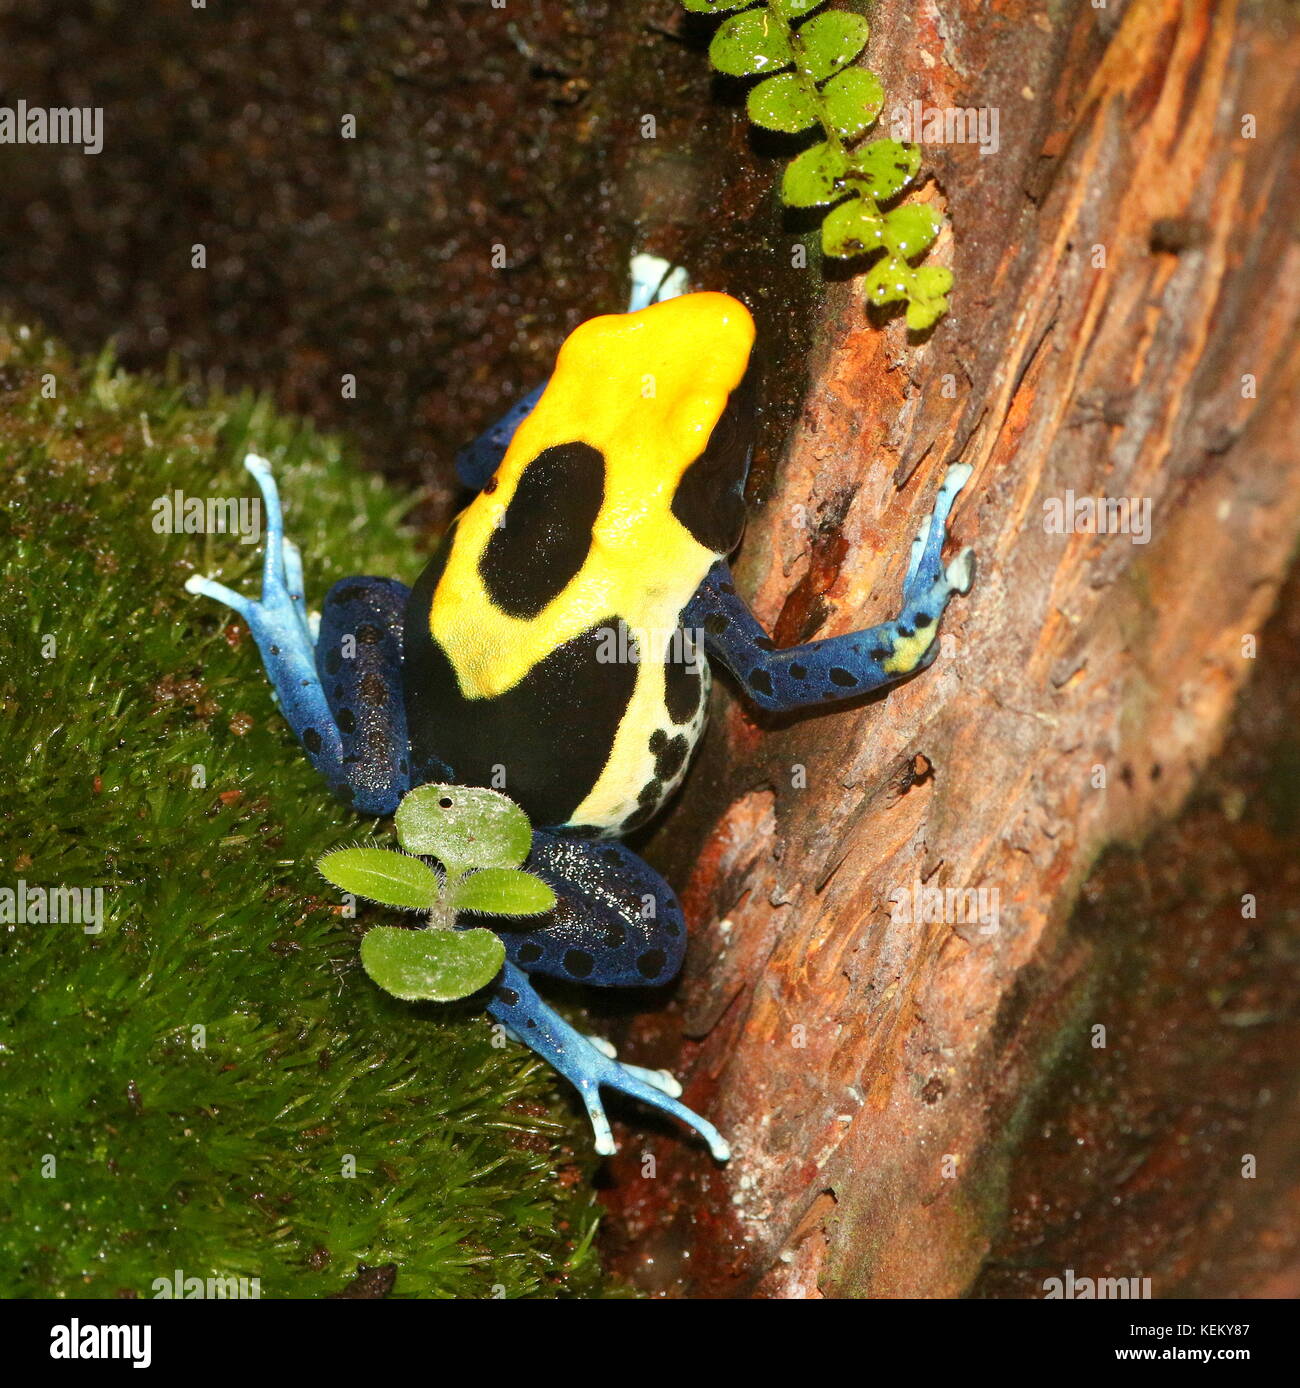 South American Dyeing poison dart frog or Tinc poison frog (Dendrobates tinctorius, Rana tinctoria), native to Guyana, Suriname, Brazil, French Guiana Stock Photo